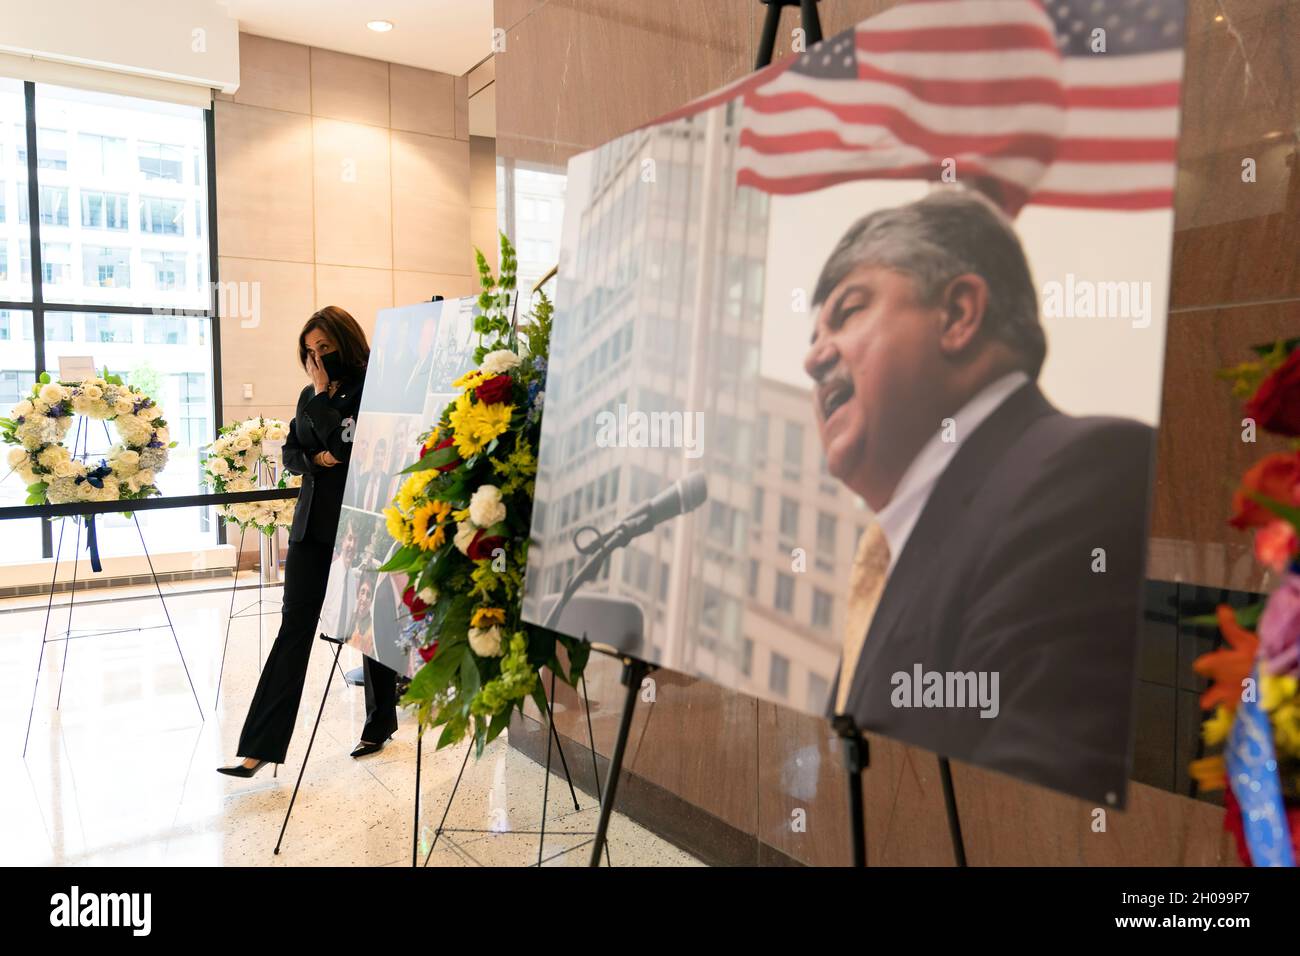 Le vice-président Kamala Harris arrive à rendre hommage au président récemment décédé de l'AFL-CIO Richard Trumka le samedi 14 août 2021, au siège de l'AFL-CIO à Washington, D.C. (photo officielle de la Maison Blanche par Lawrence Jackson) Banque D'Images